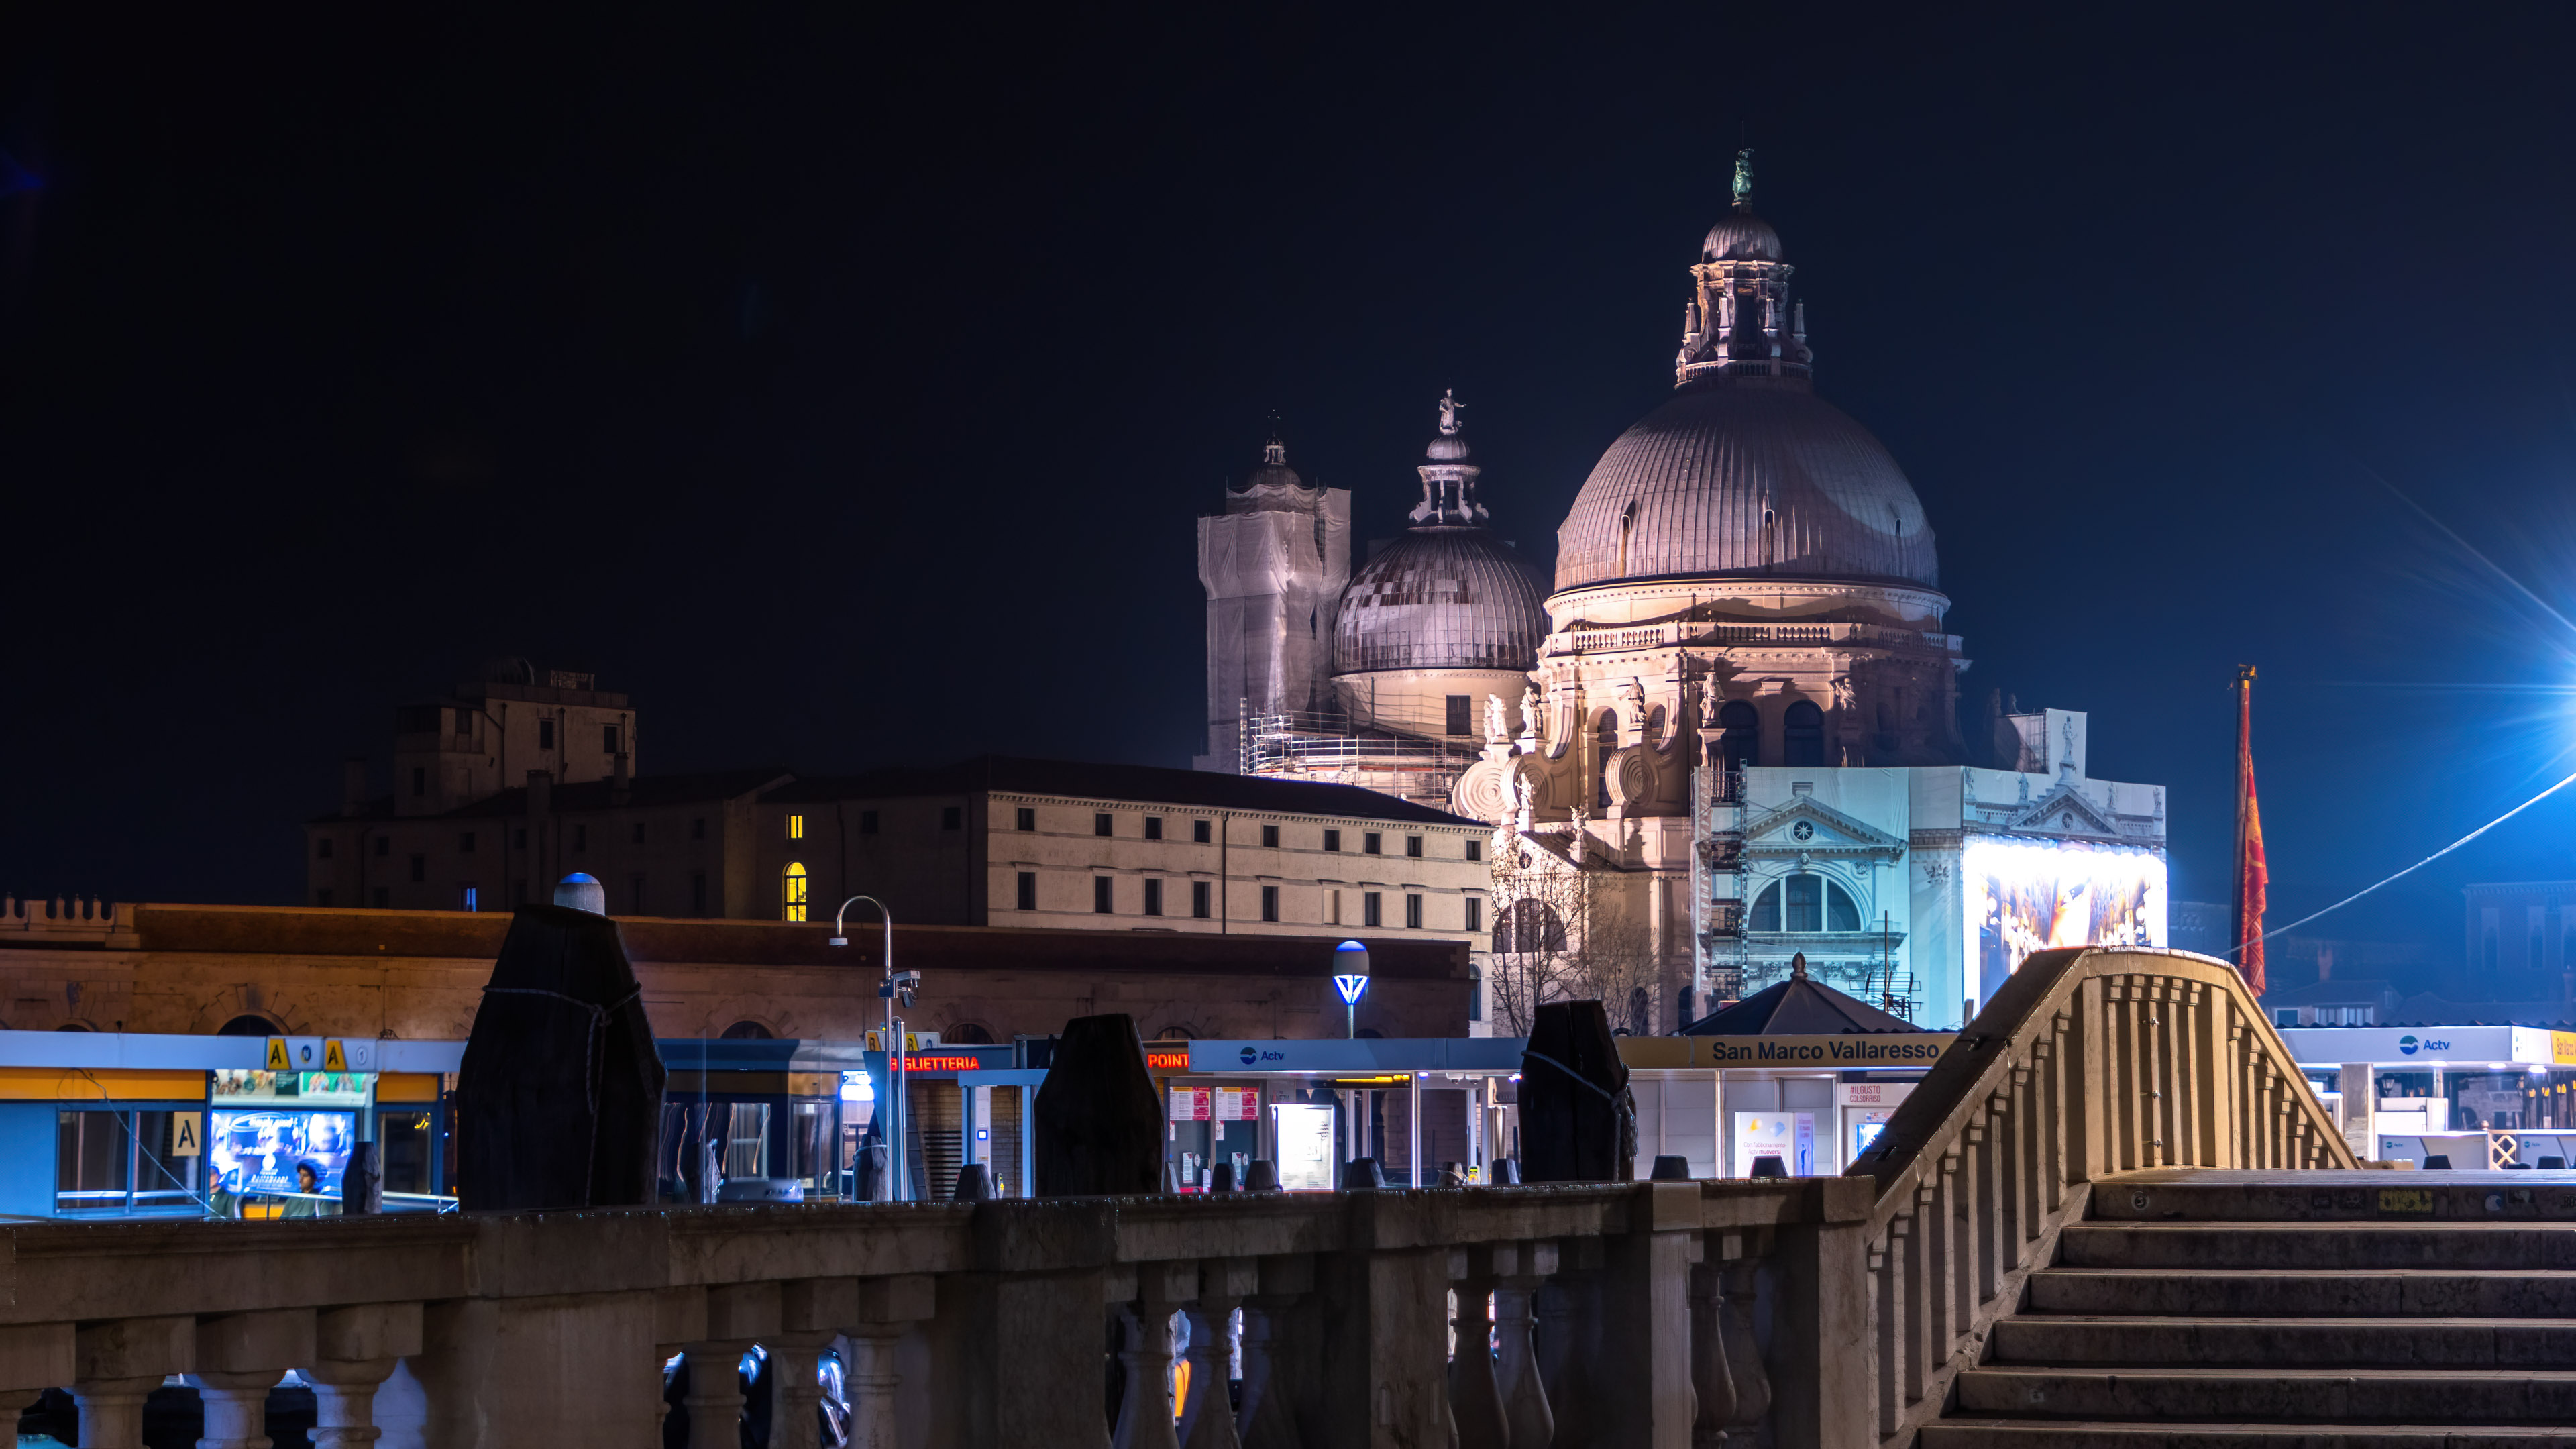 Vivez la beauté intemporelle de Venise la nuit avec notre fond d’écran de ville nocturne, offrant un paysage urbain à couper le souffle sous les teintes tranquilles du ciel nocturne.